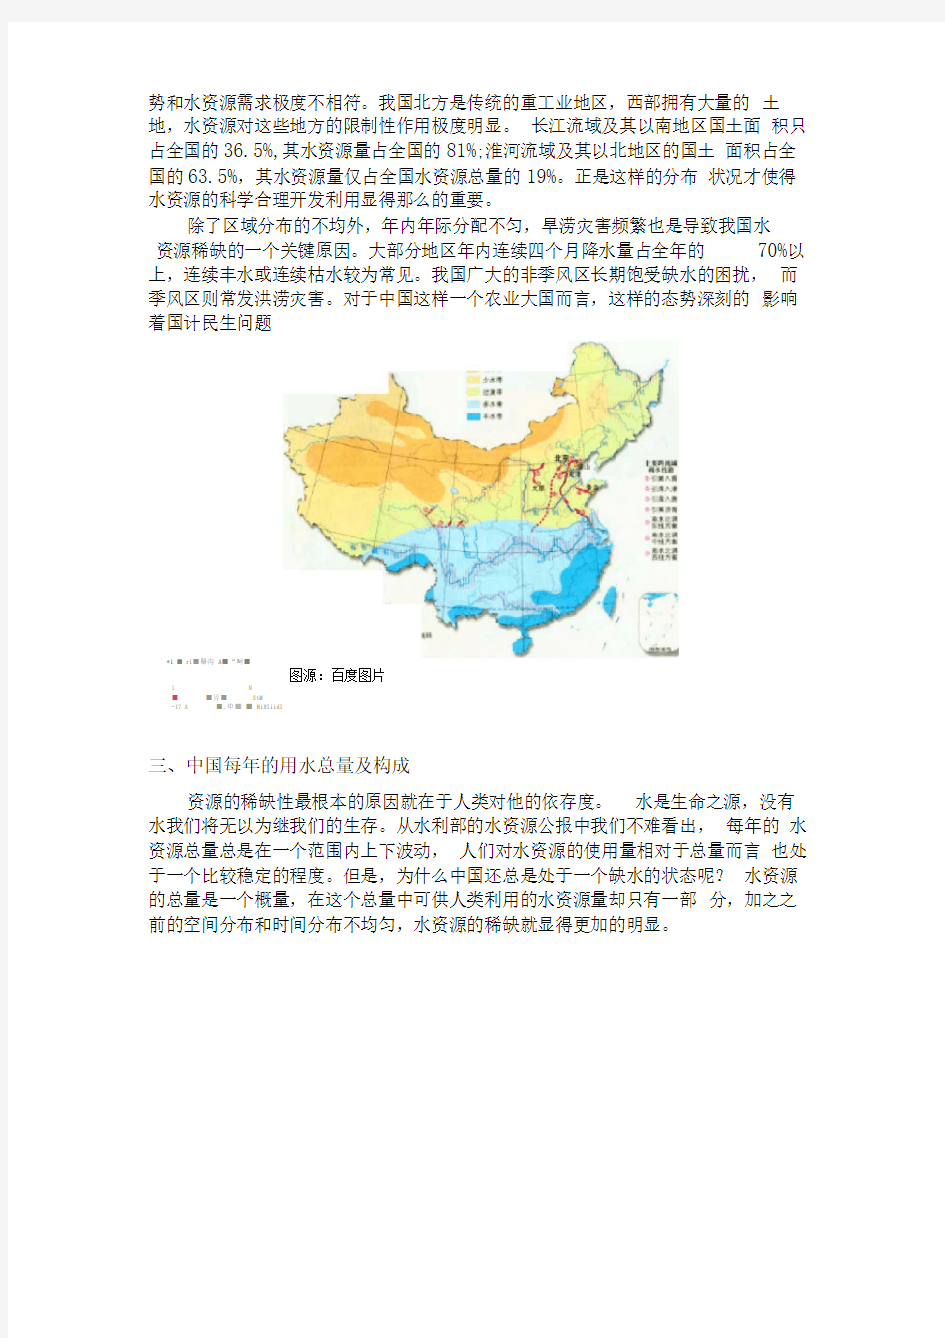 中国水资源稀缺性分析